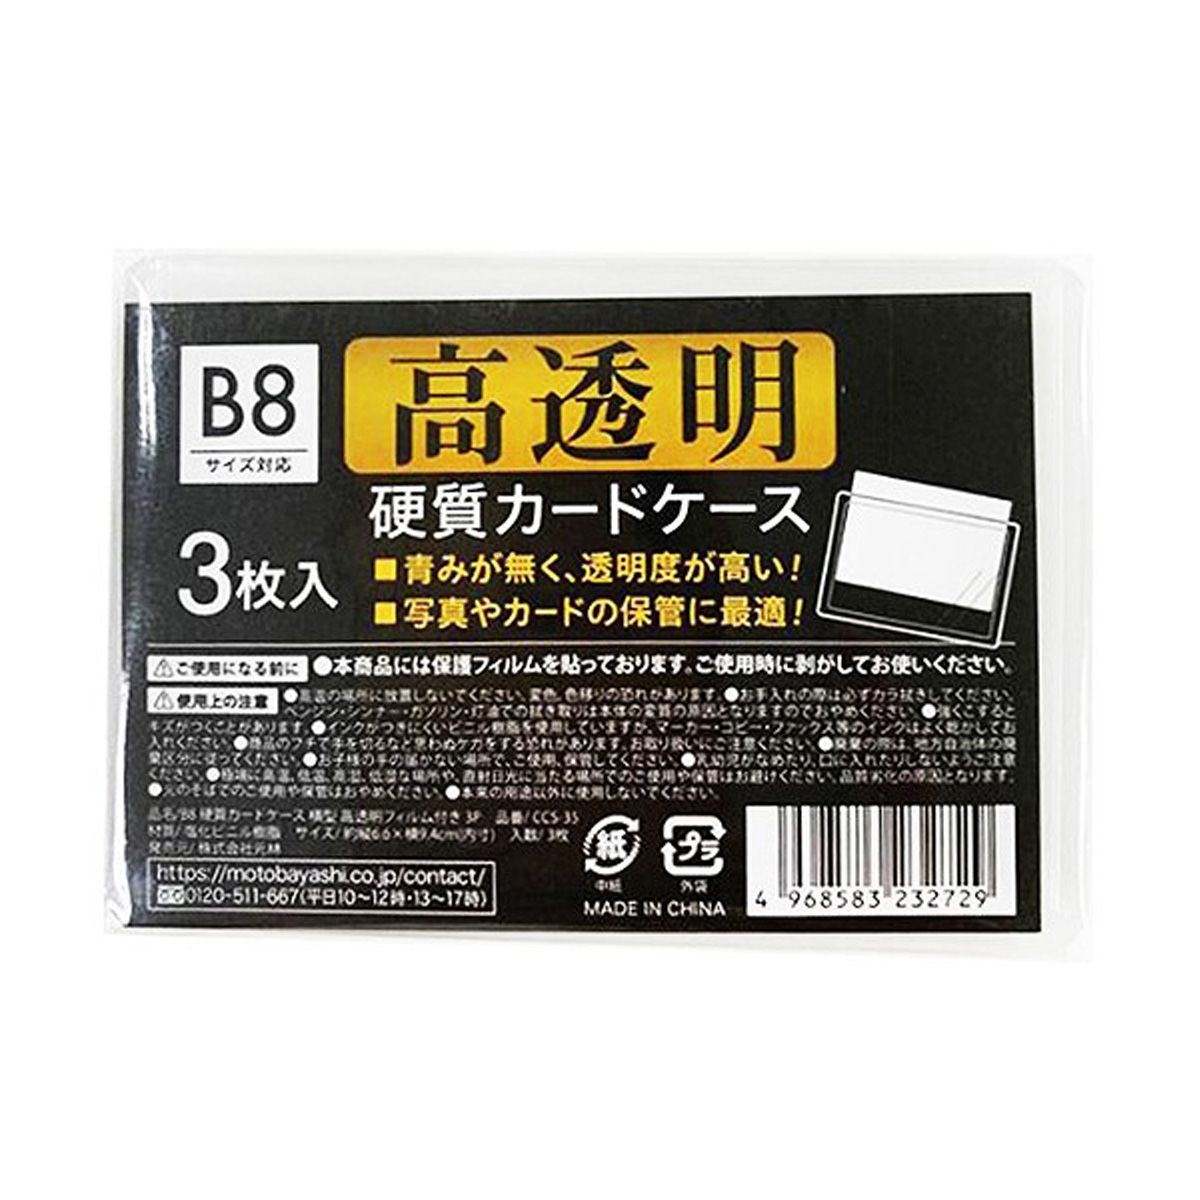 B8硬質カードケース高透明フィルム付3P 352131